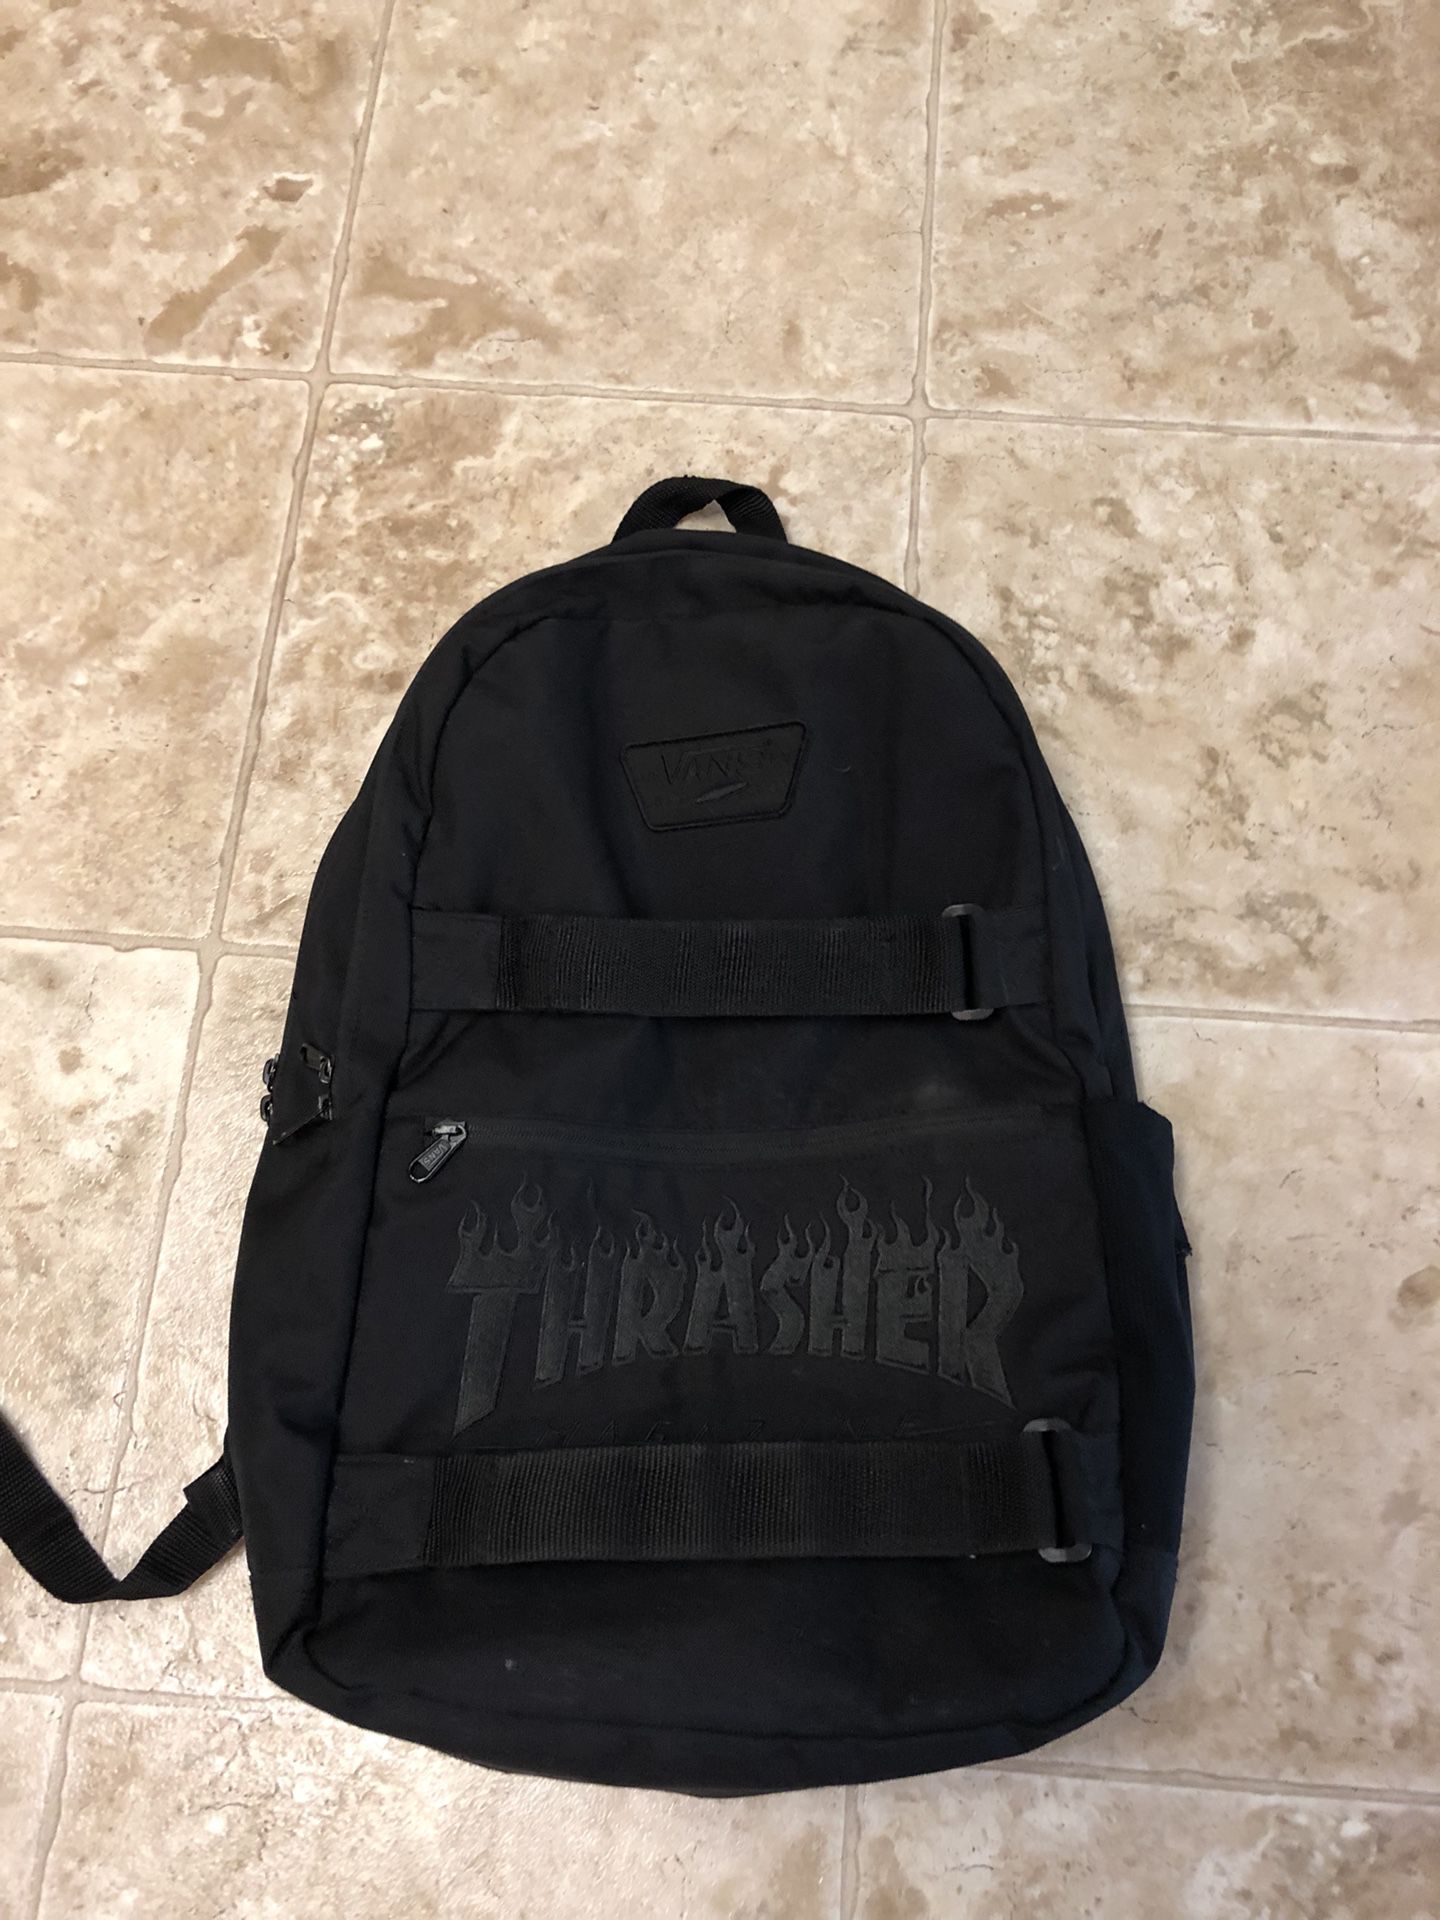 yderligere træfning Resonate Thrasher vans black backpack for Sale in Yakima, WA - OfferUp